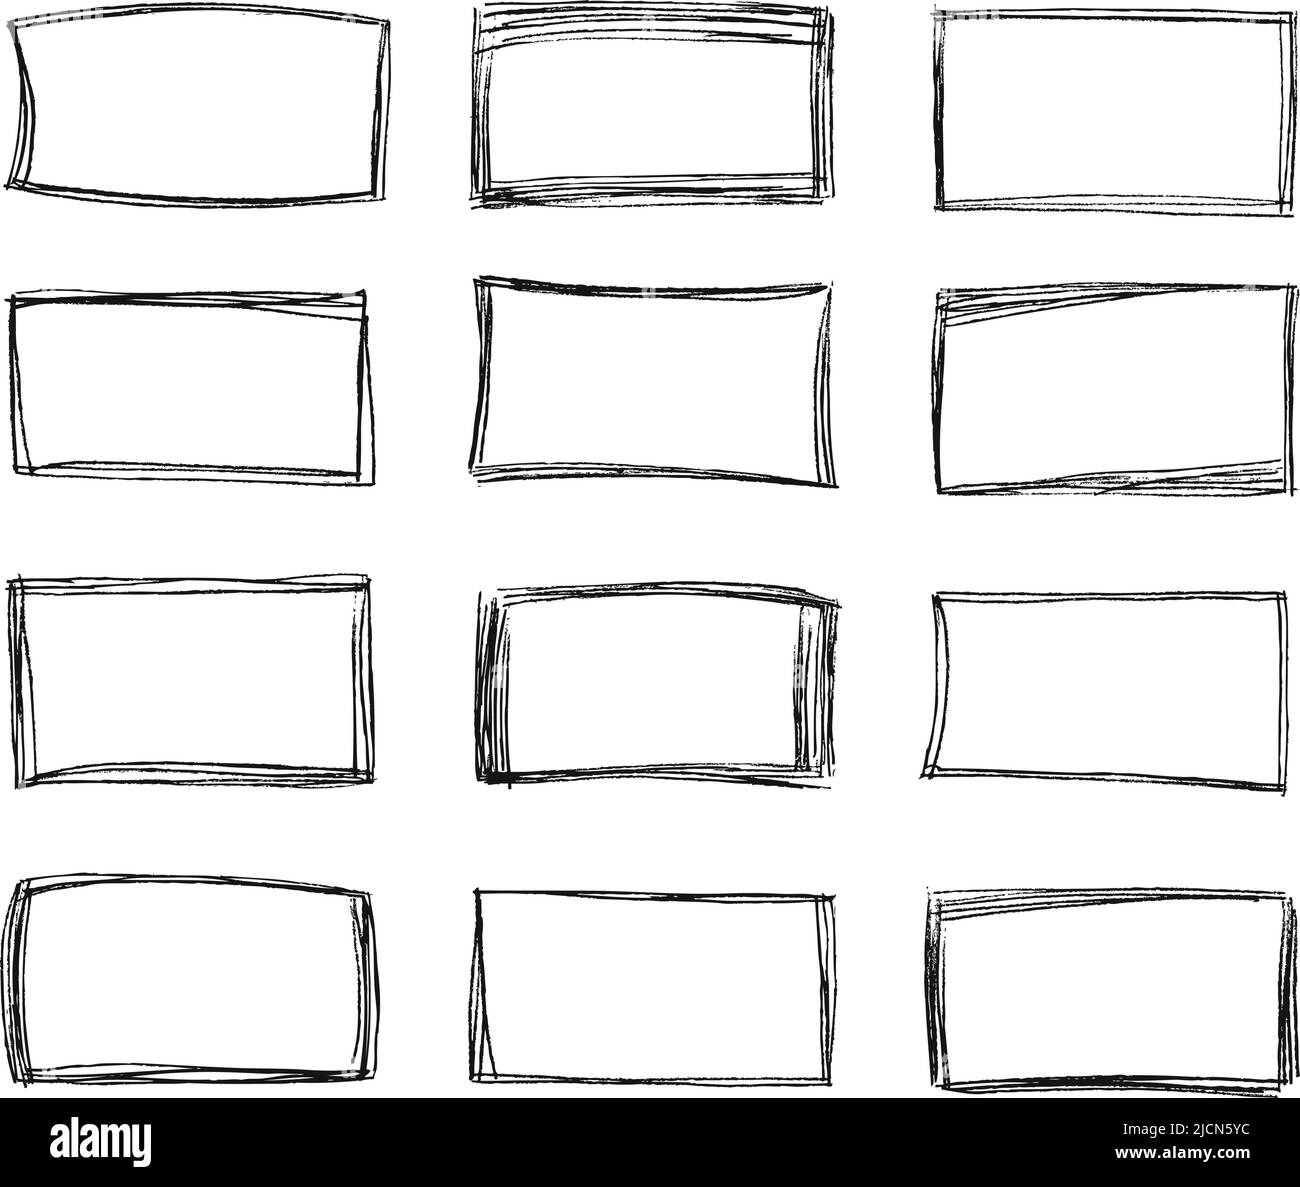 Disegnare i quadri quadrati. Bordo del doodle di forma rettangolare disegnato a mano, quadretti di scorrimento della linea a matita e insieme vettoriale del frame di selezione disegnato a mano Illustrazione Vettoriale